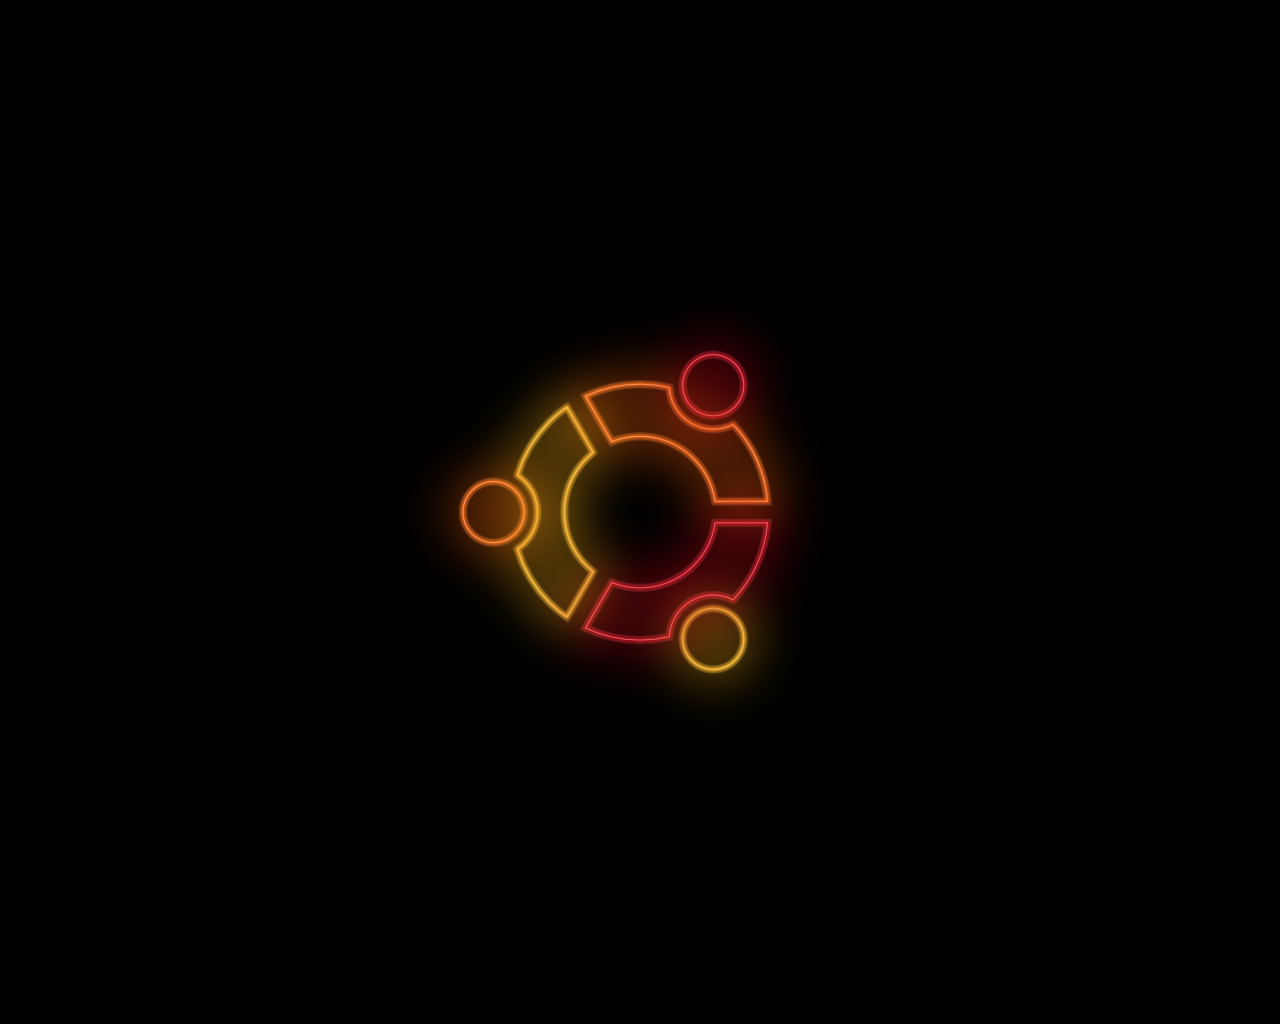 Ubuntu_Neon_Wallpaper_by_ThePikuseru.png